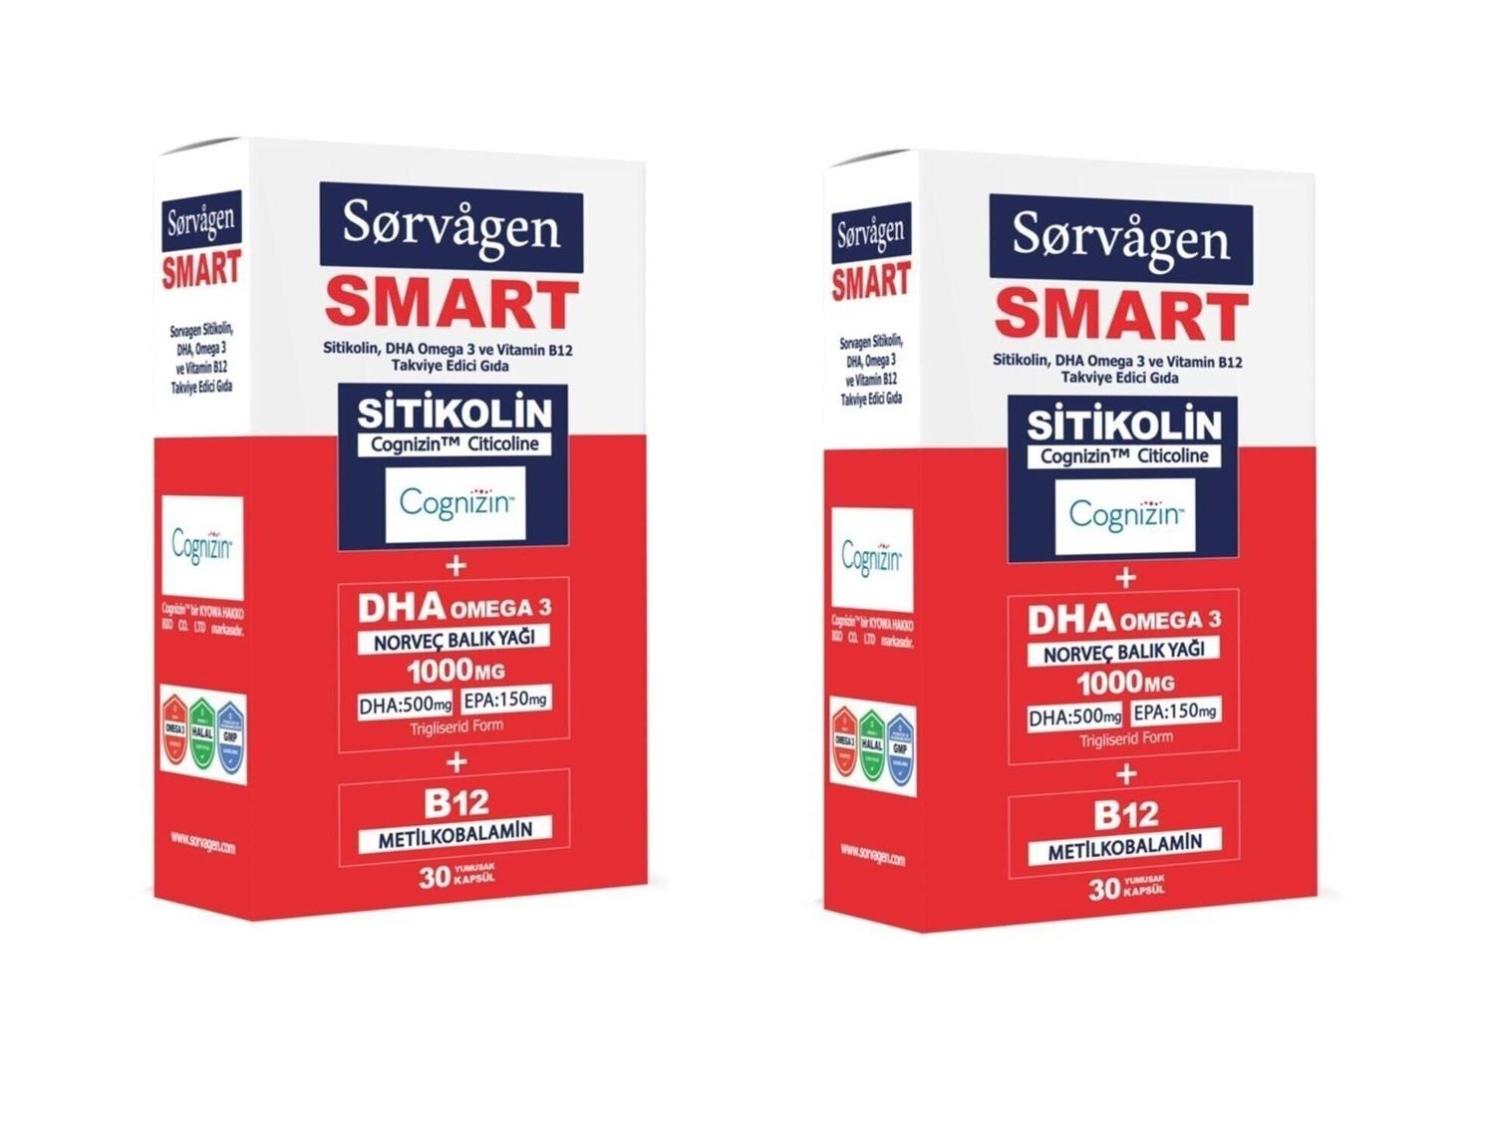 Sorvagen Smart Sitikolin Dha Omega 3 Ve B12 30 Kapsül - 2 Adet - 1